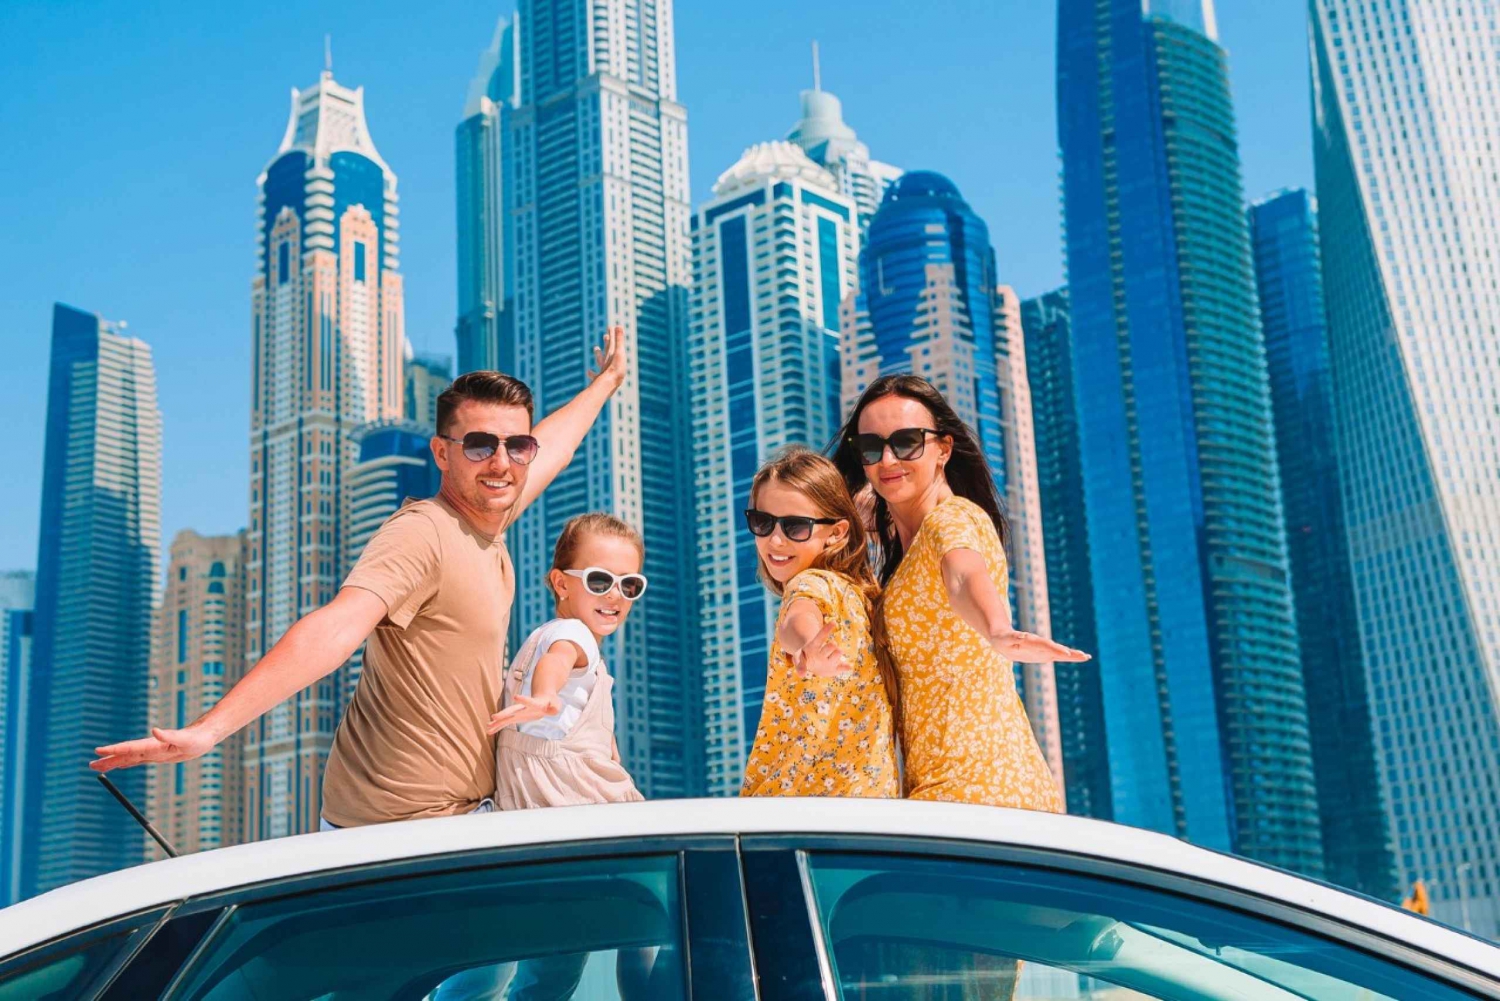 Dubai: Stadens höjdpunkter biltur